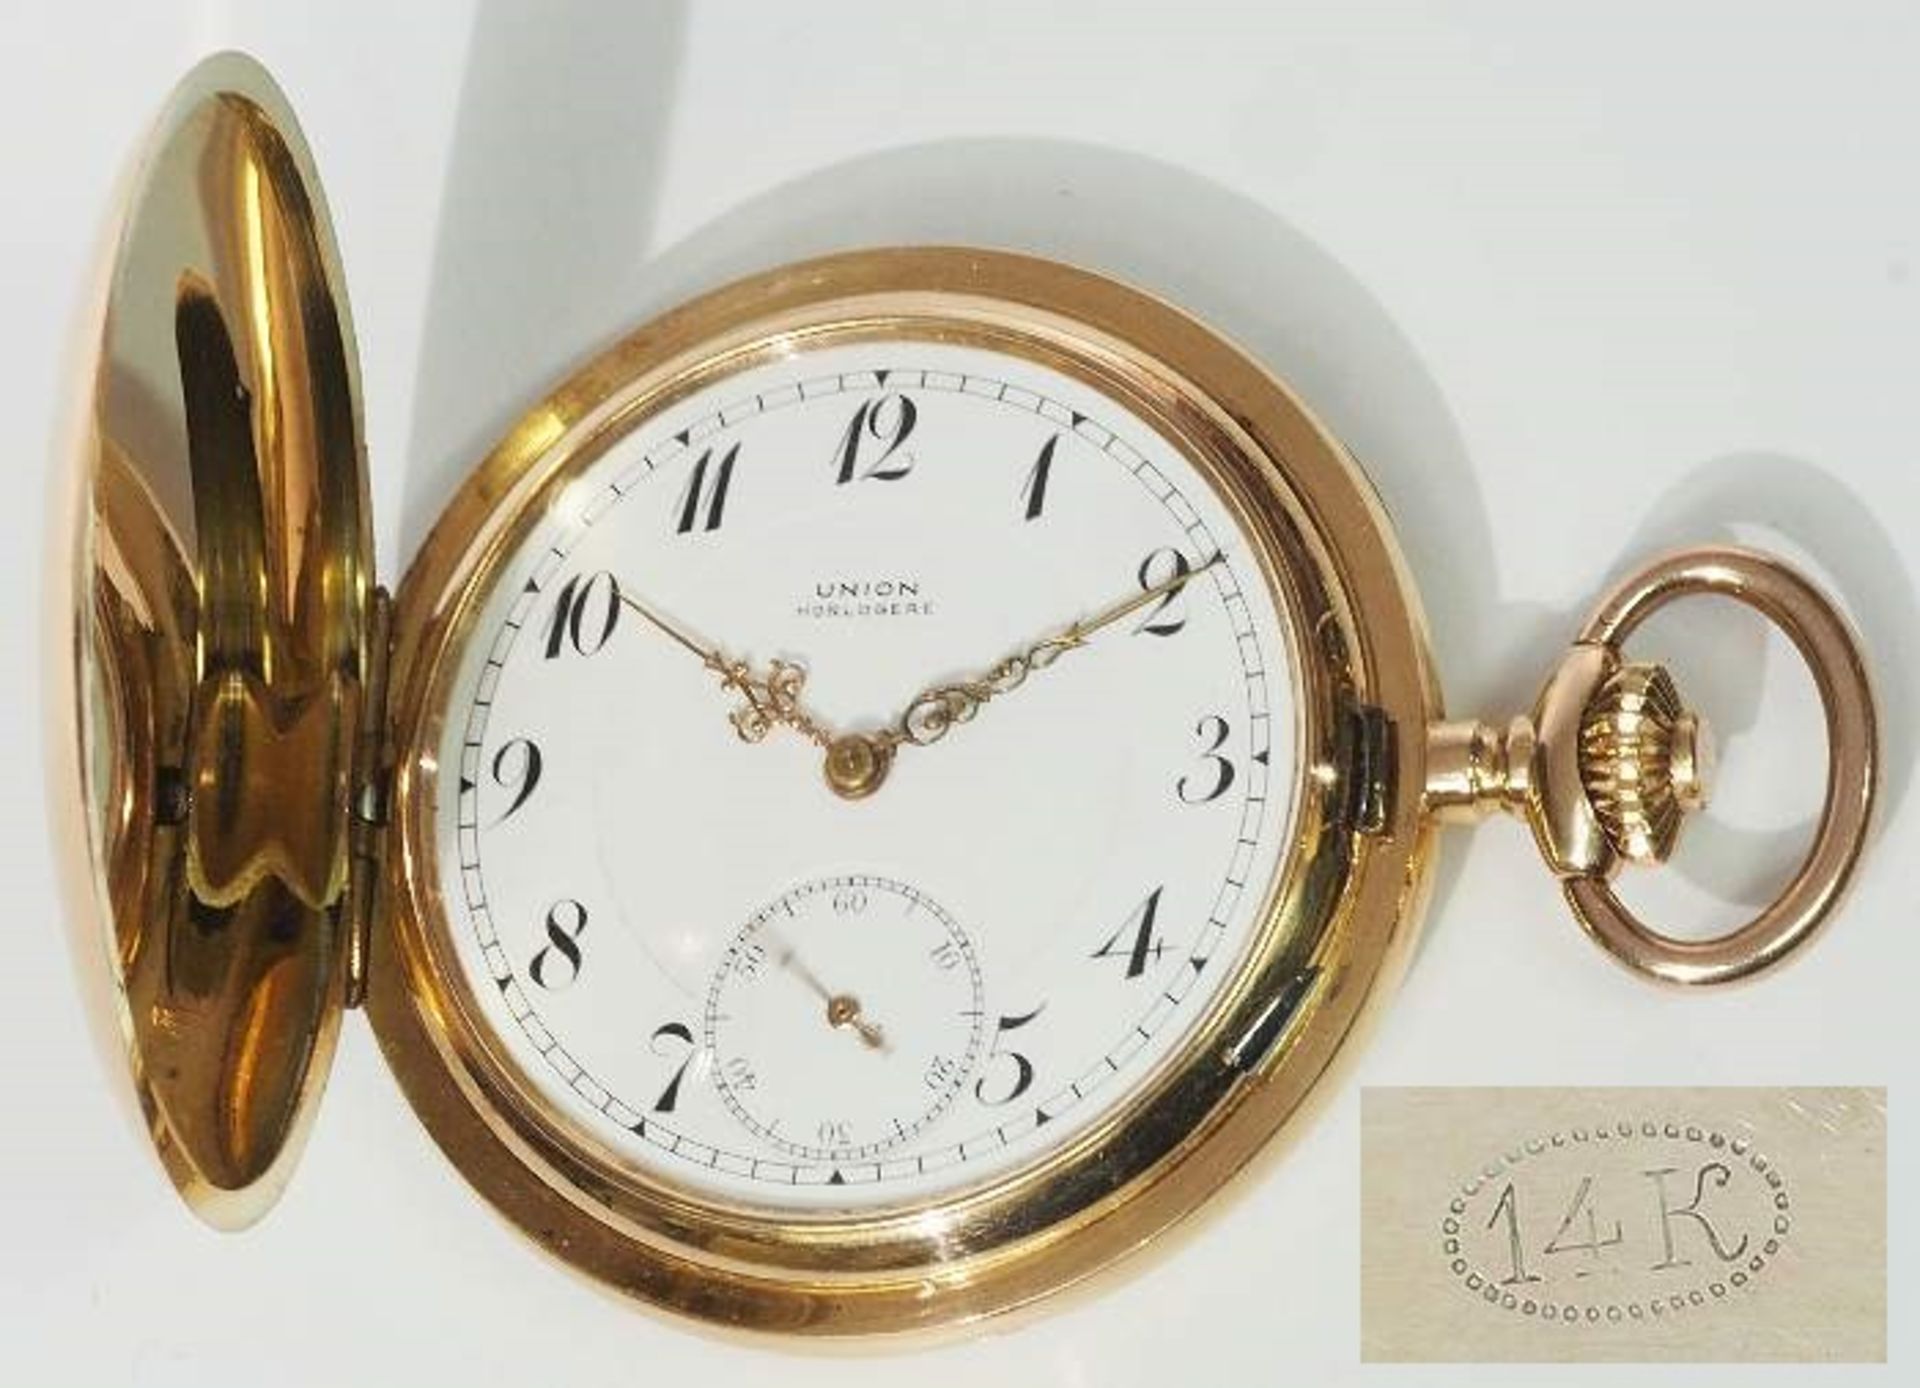 Taschenuhr UNION Horlogere, 585er Gold. Alle Deckel (auch Staubdeckel) aus Gold. Weißes